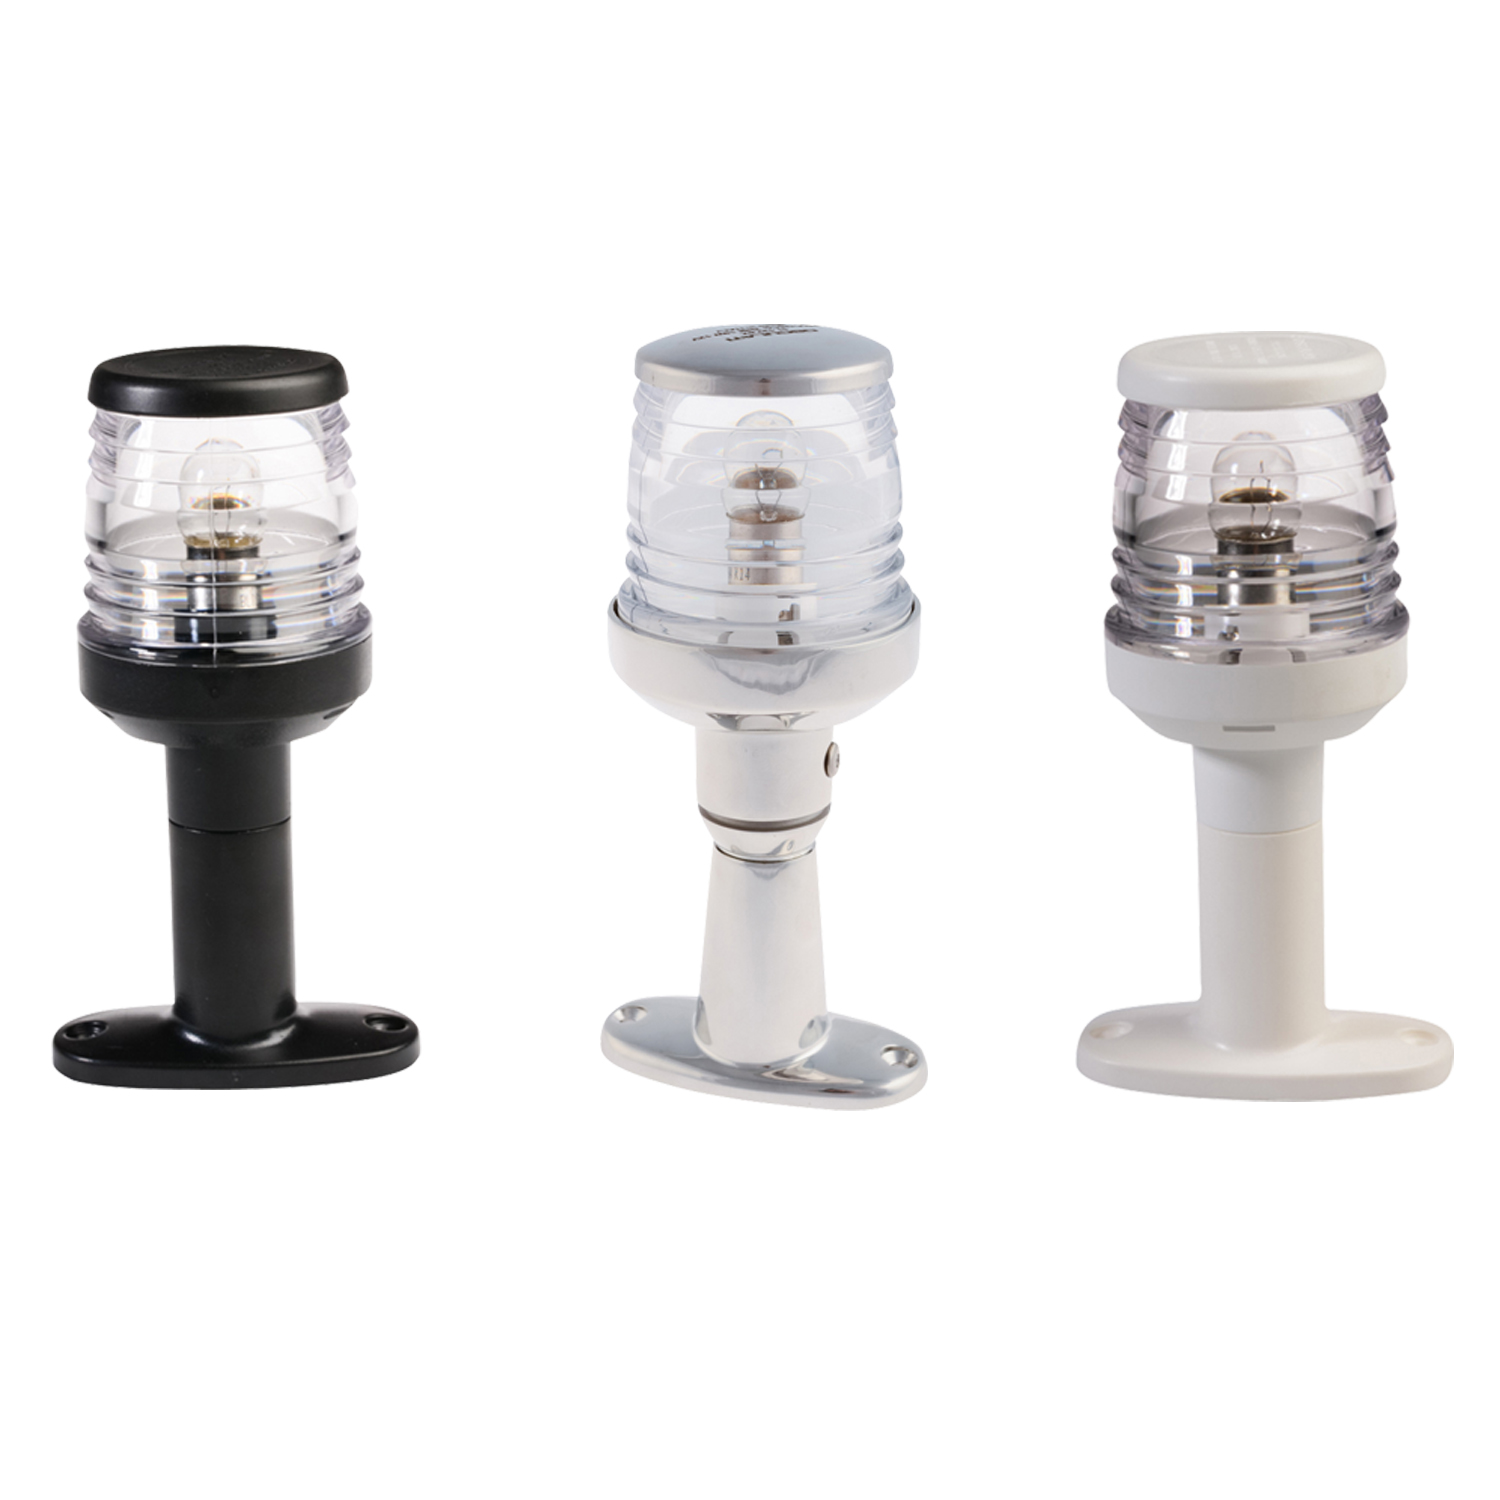 All Round 360 Degree White Navigation Light - LED - Black, White or Stainless Steel